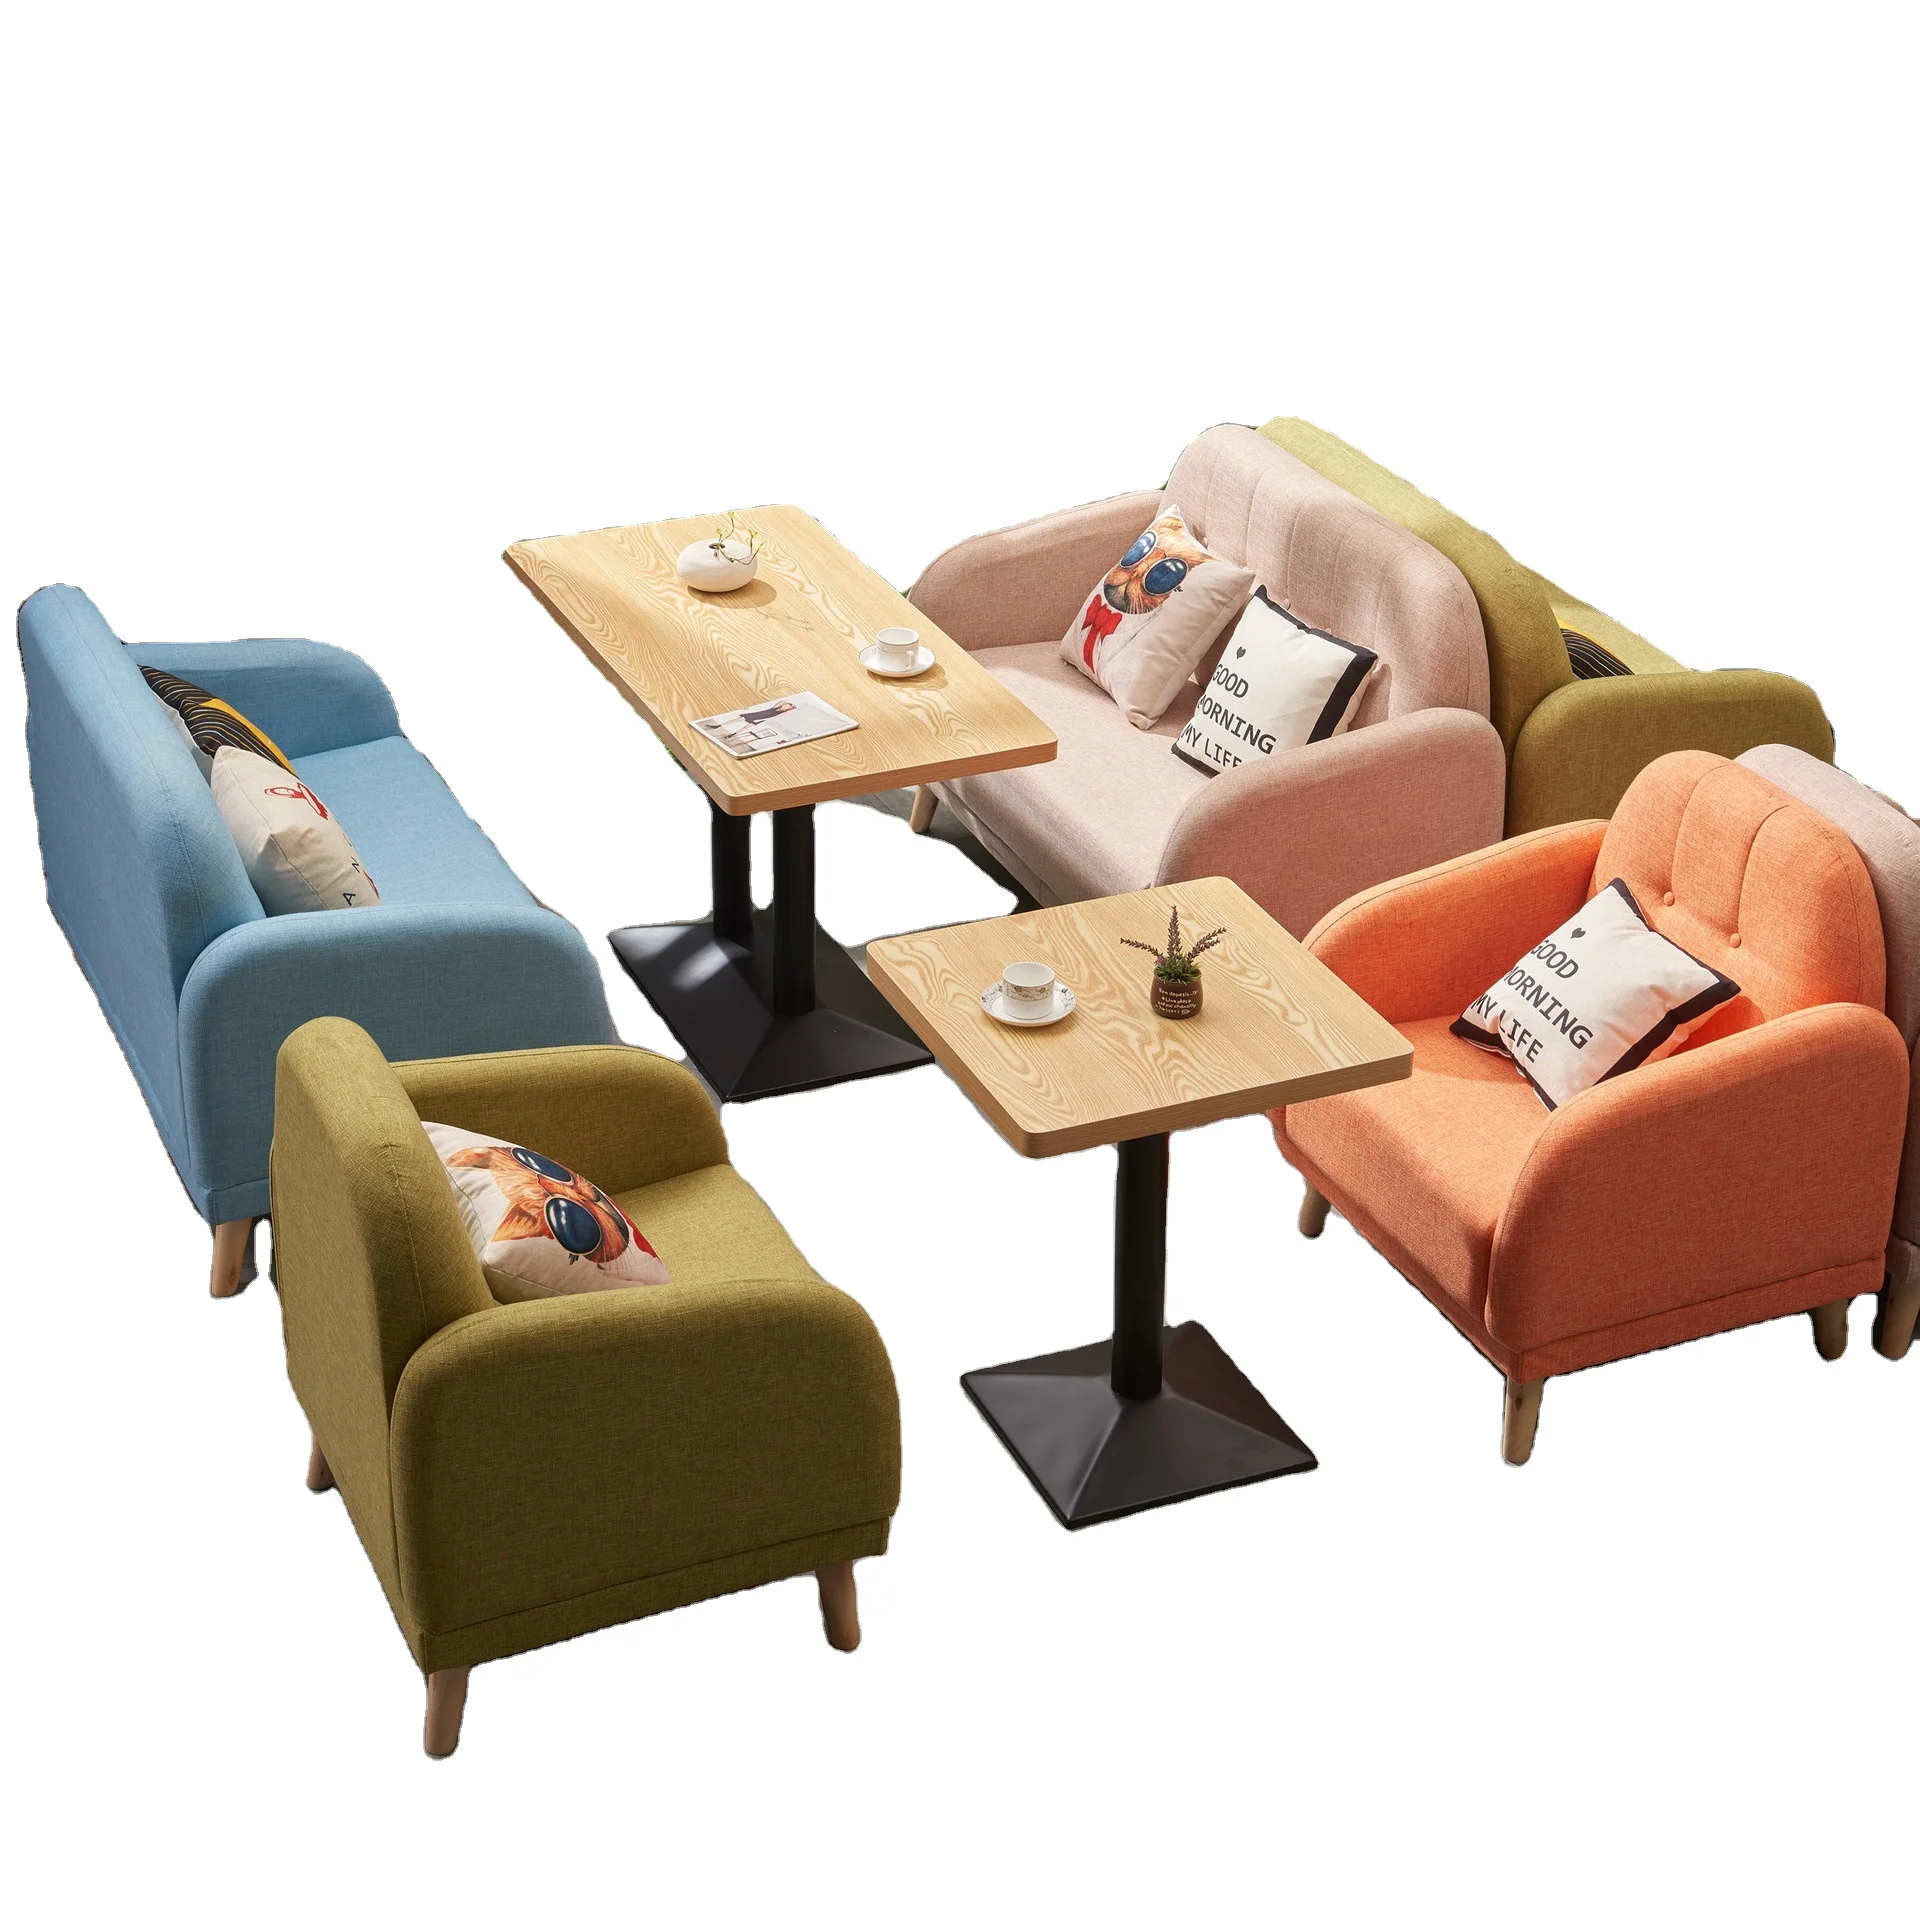 2021新西式咖啡店和餐厅双人沙发椅子工业风格咖啡馆桌子设置商业家具